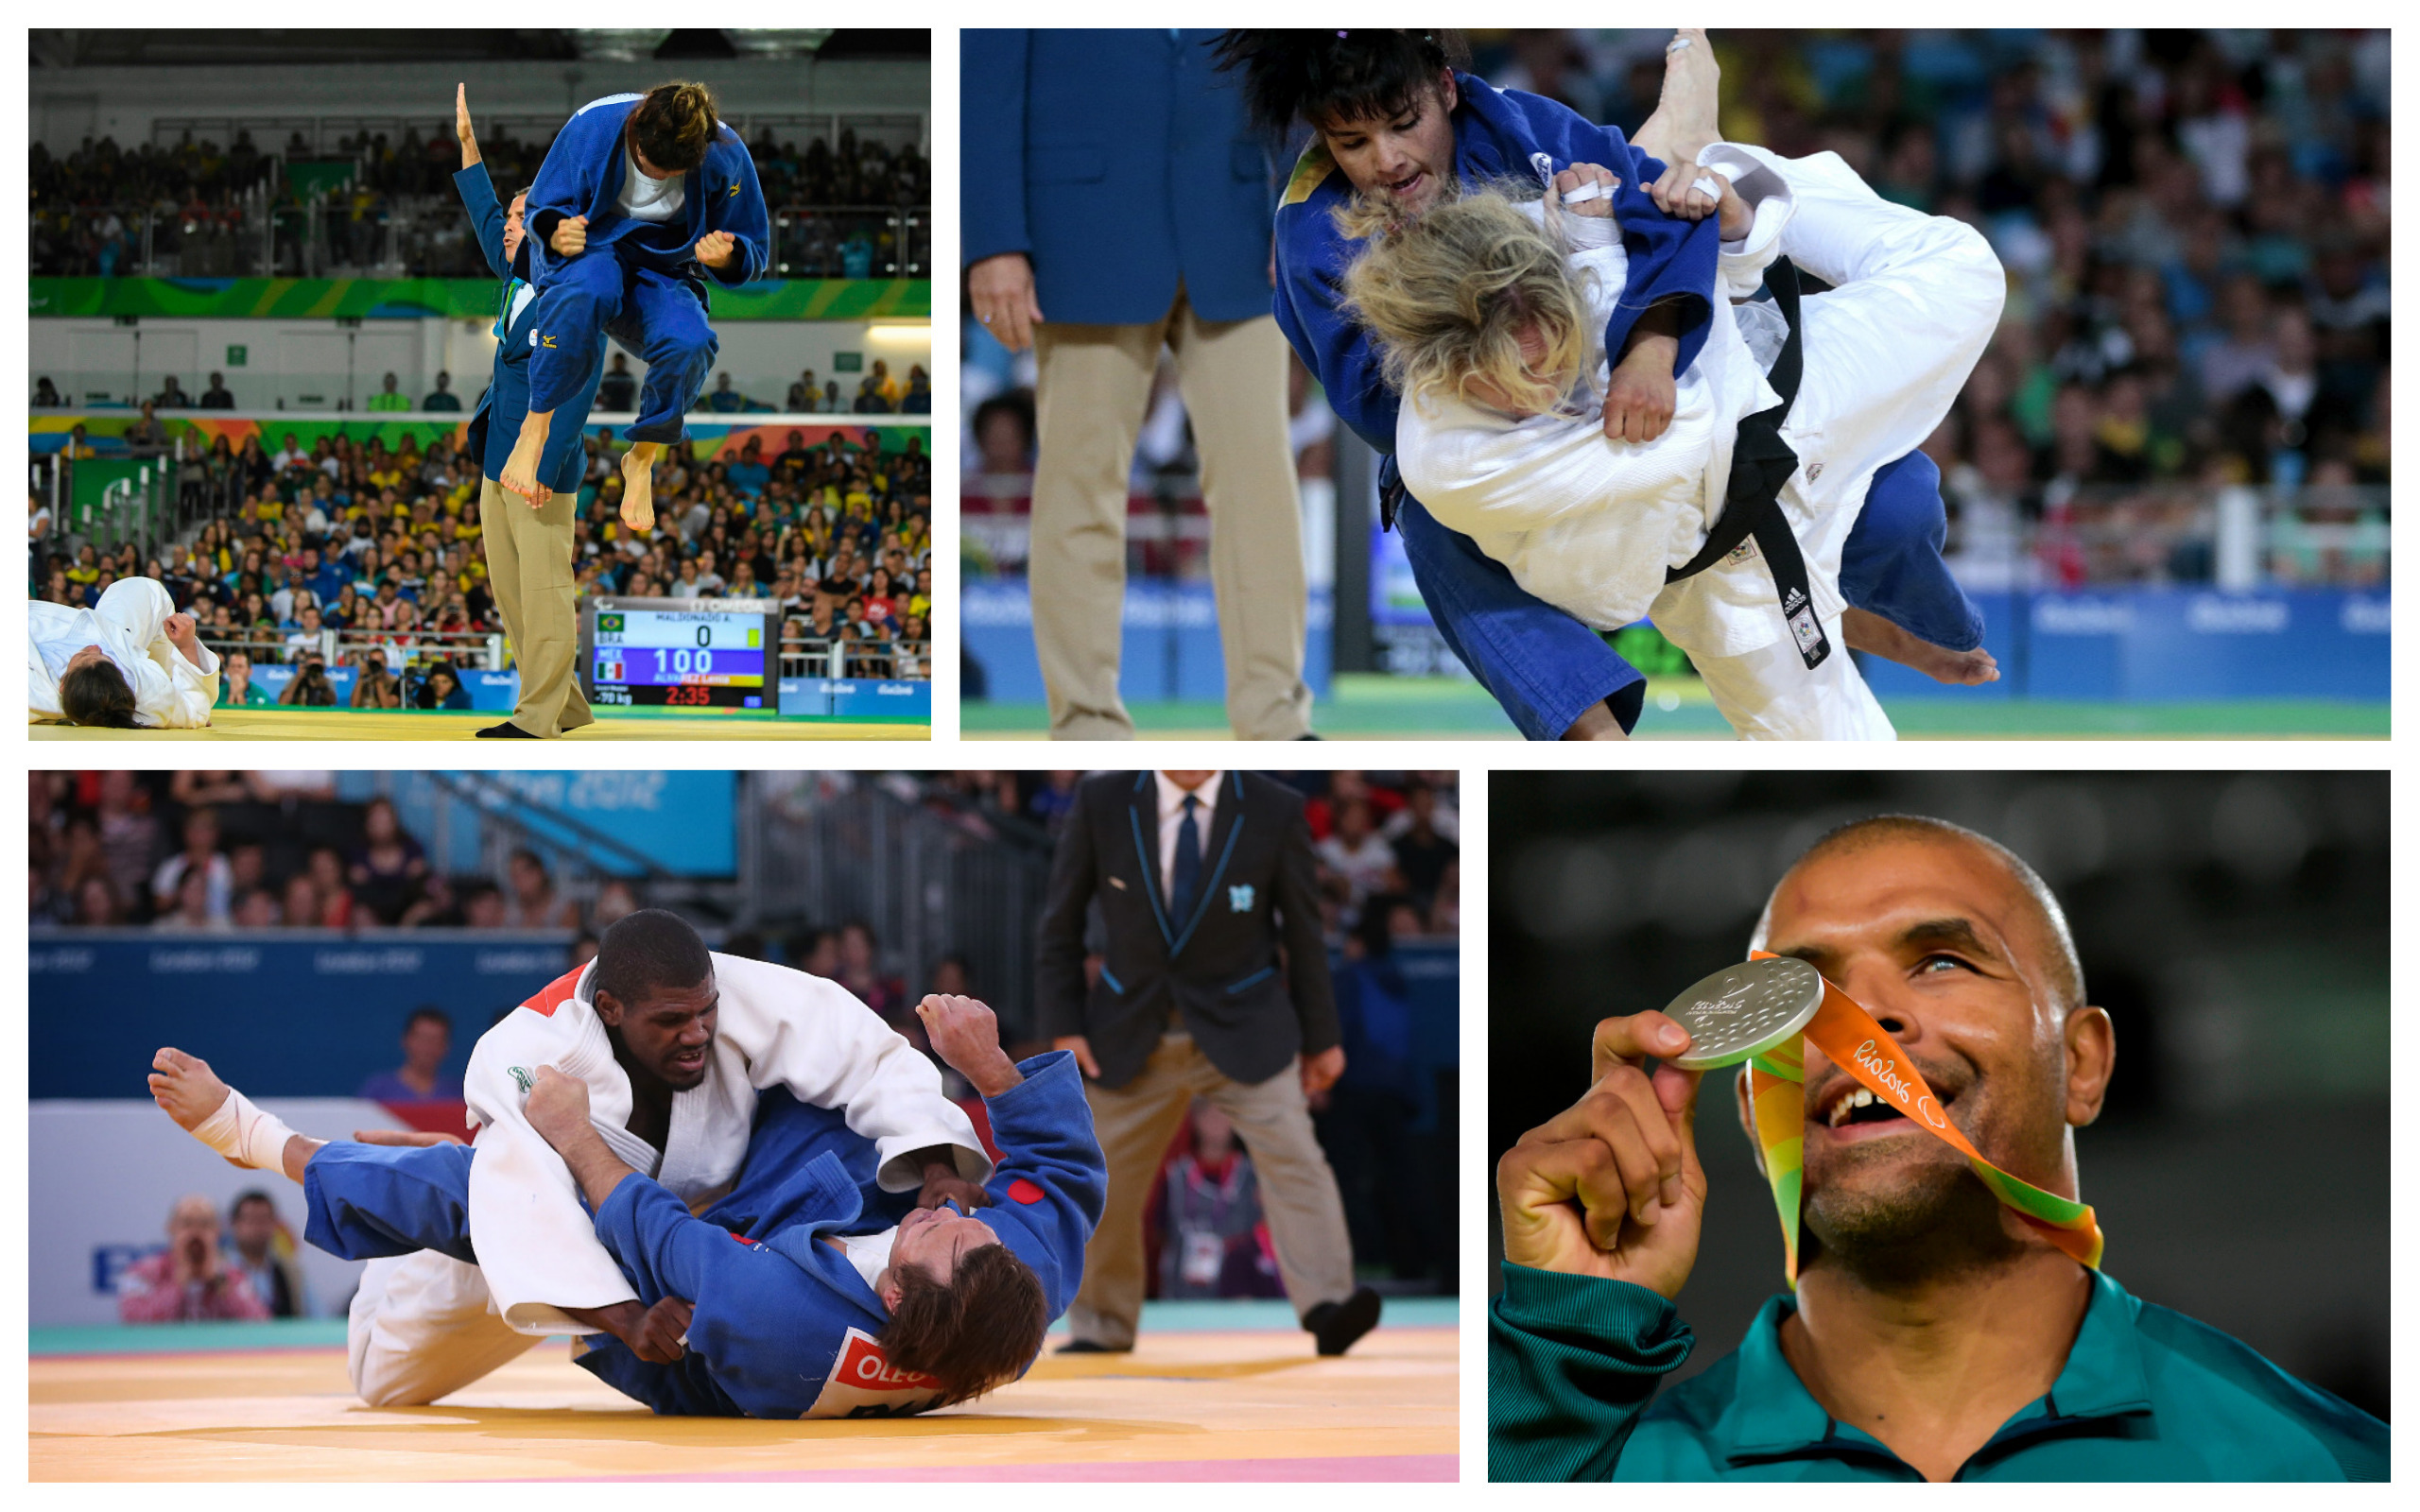 Judokas Competing On The Mat - Dartanyon Crockett , HD Wallpaper & Backgrounds